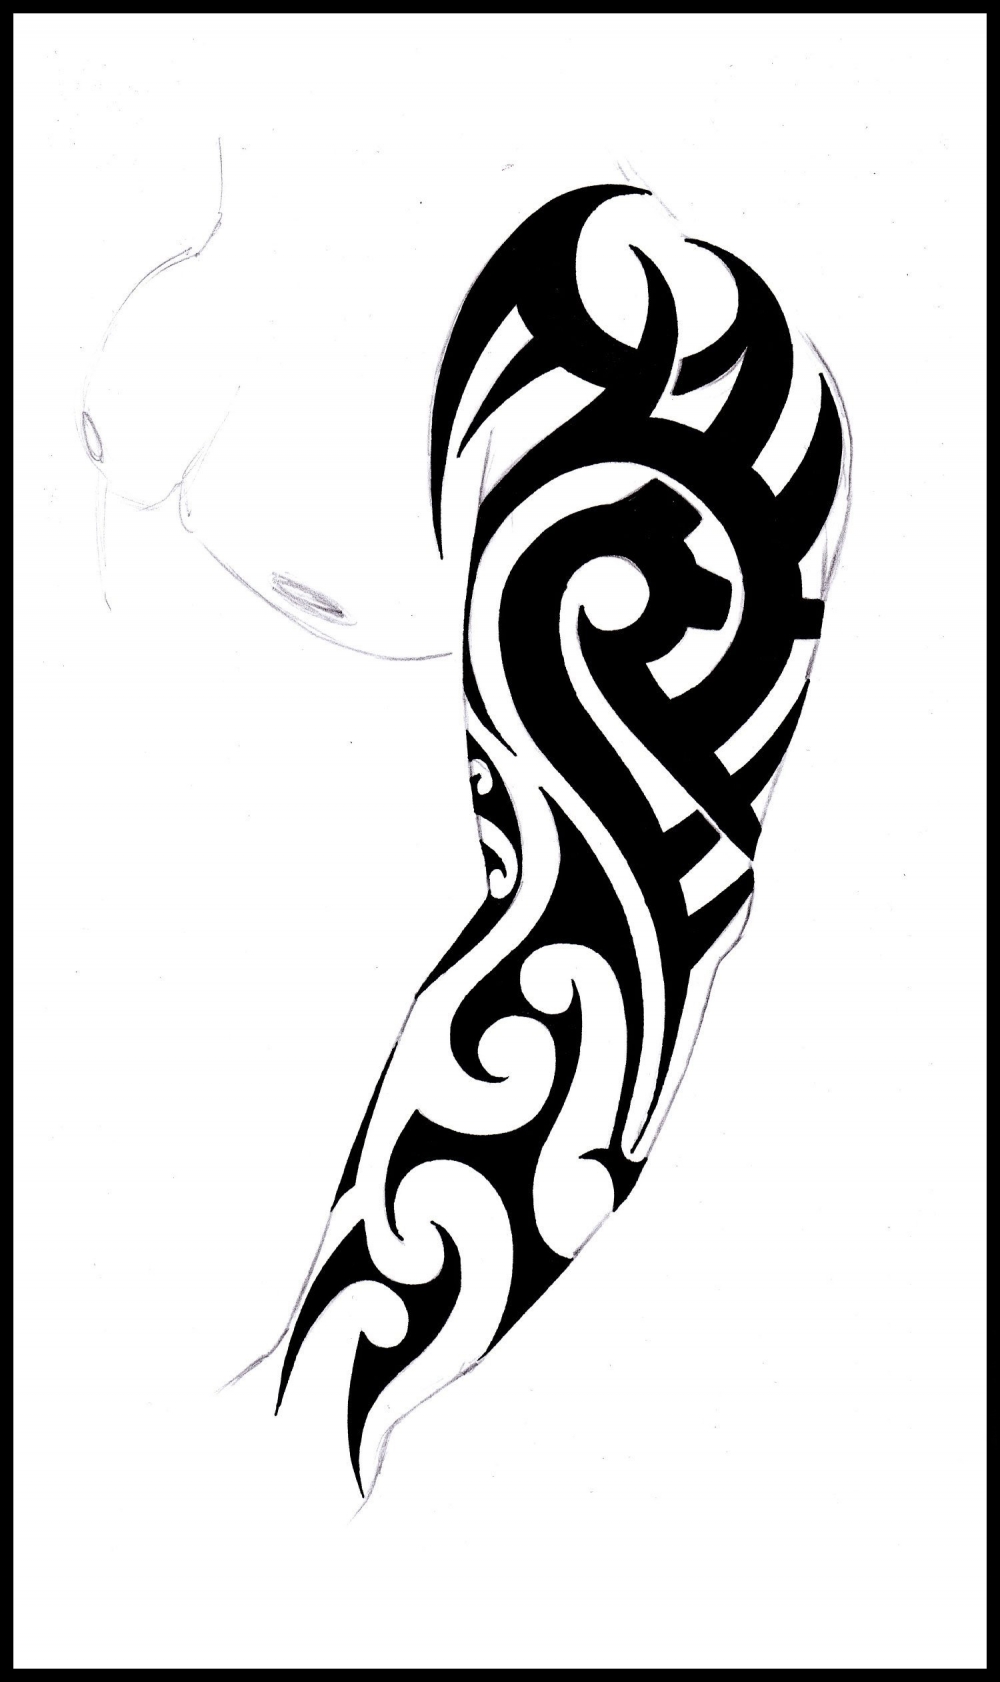 部落图腾纹身手稿 多款简单线条纹身黑色部落图腾纹身手稿